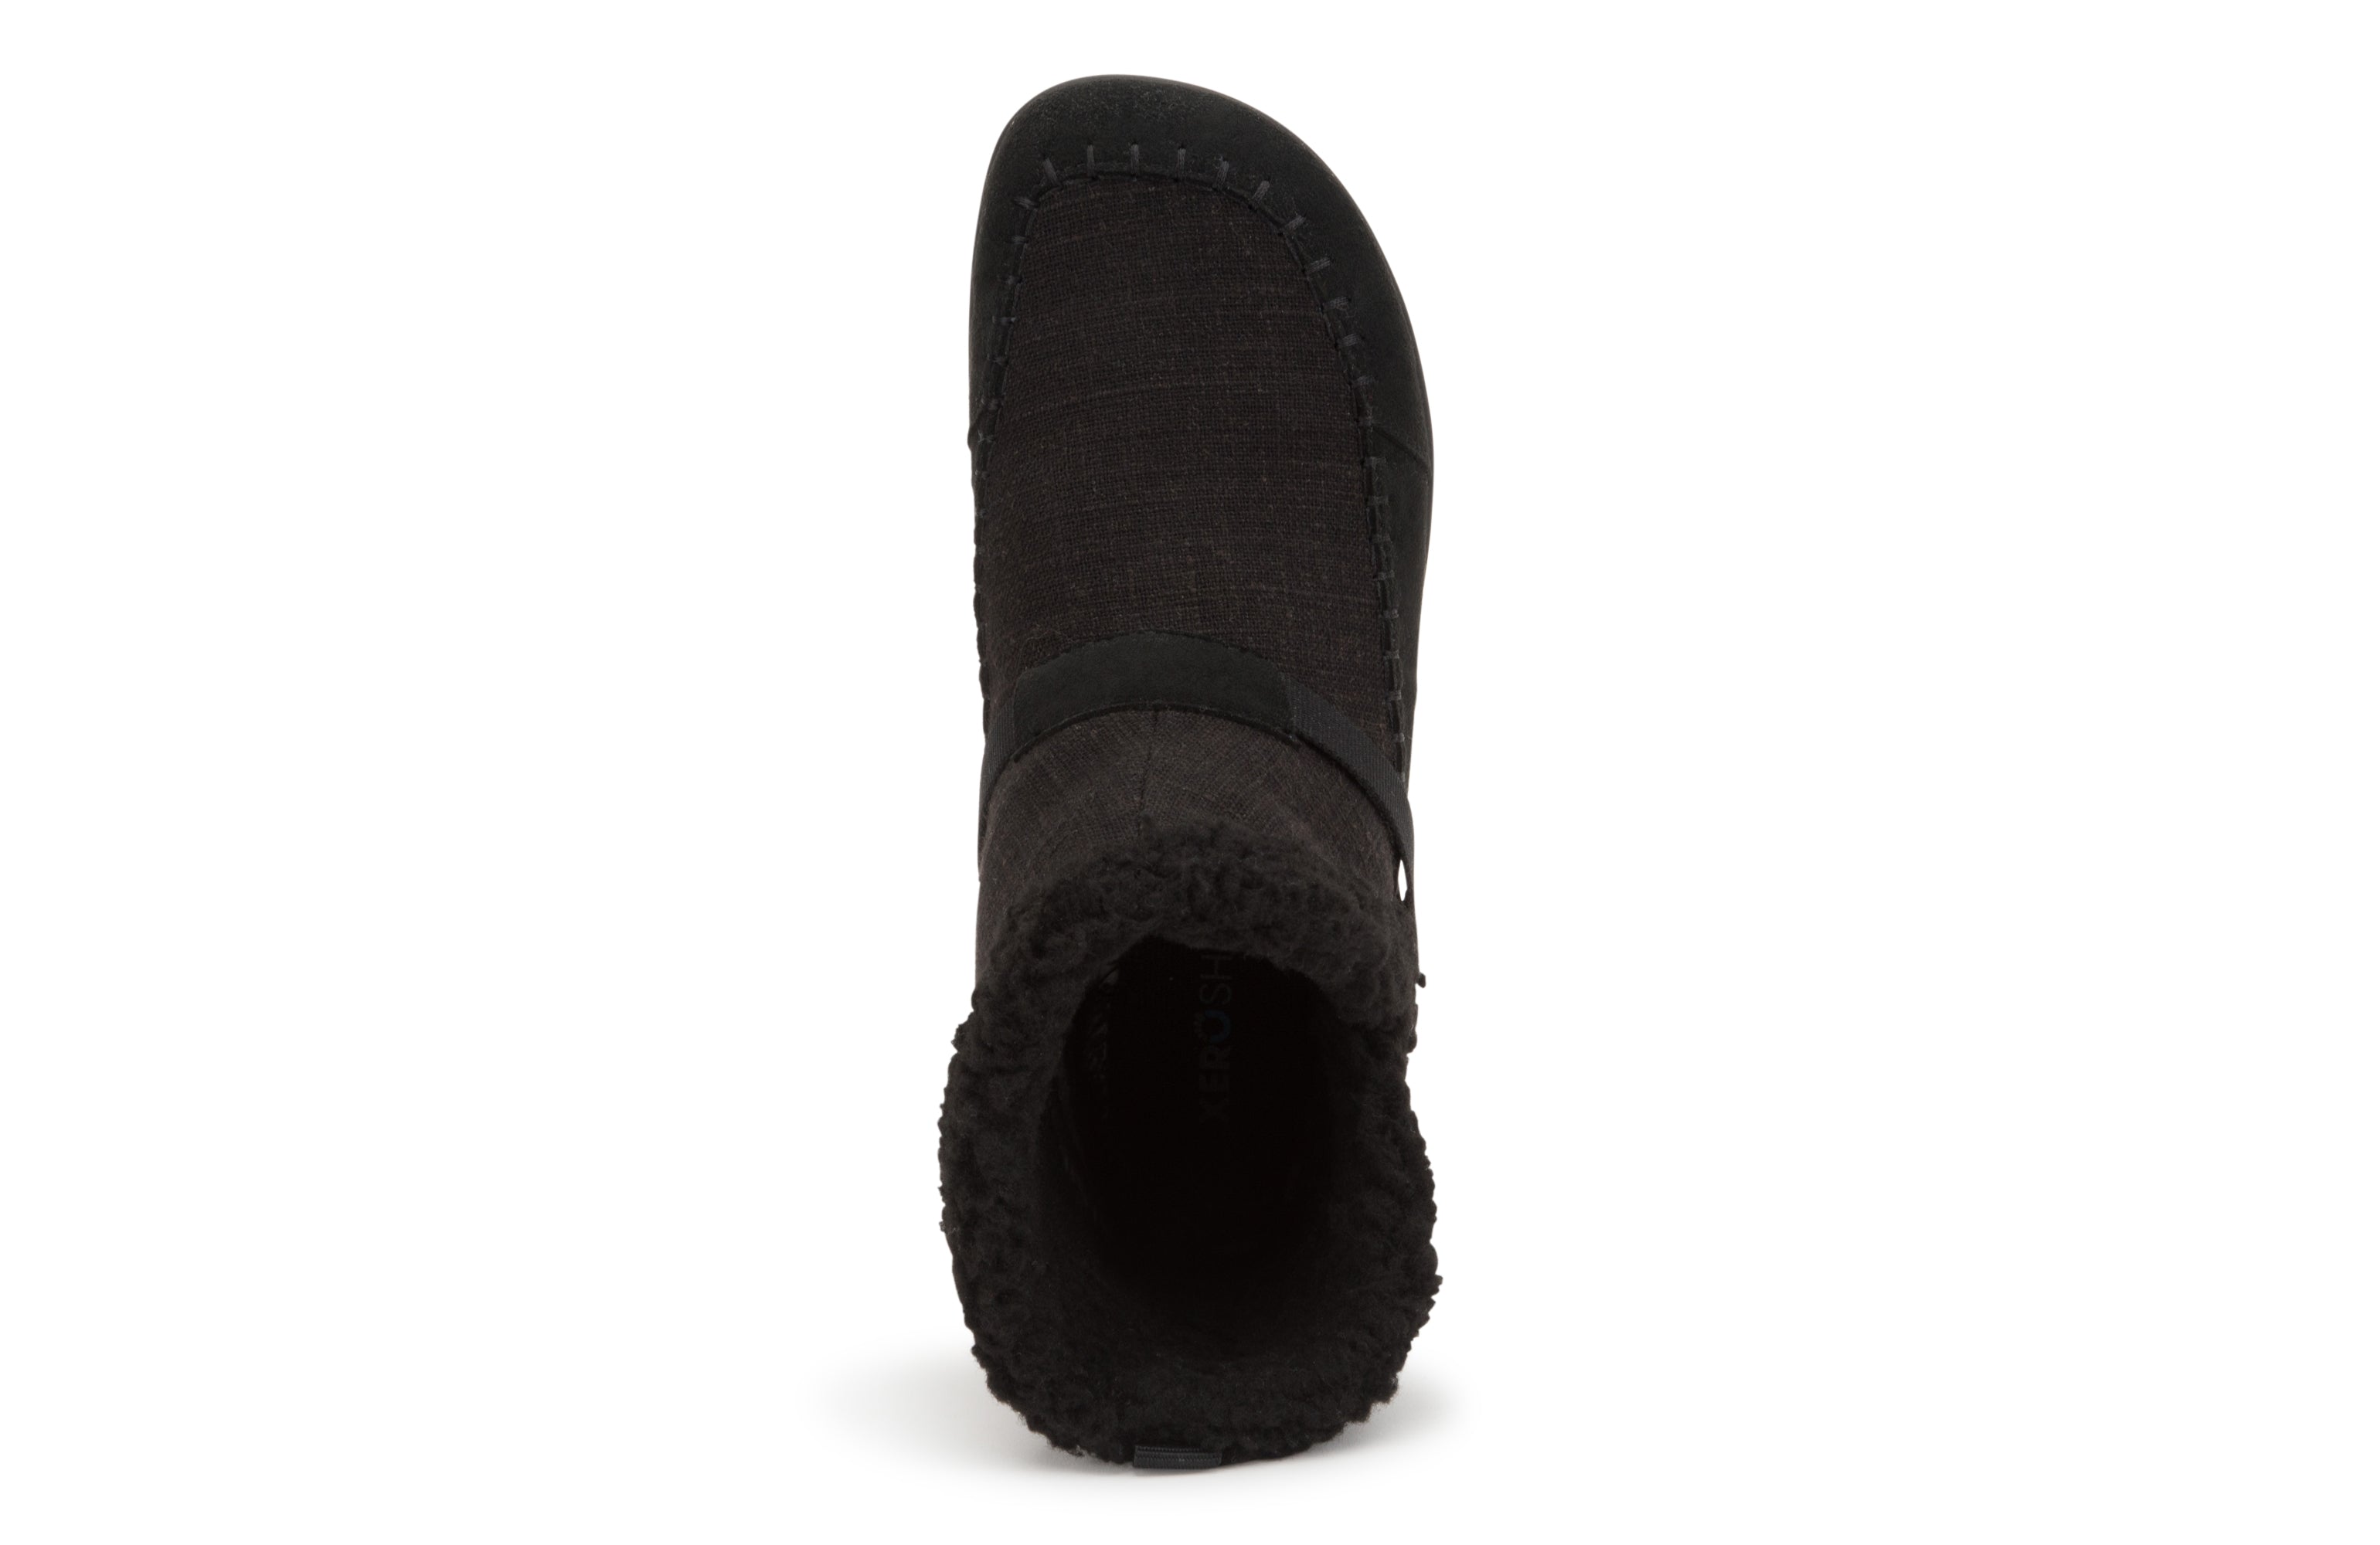 Xero Shoes Ashland barfods kanvas støvler til kvinder i farven black, top